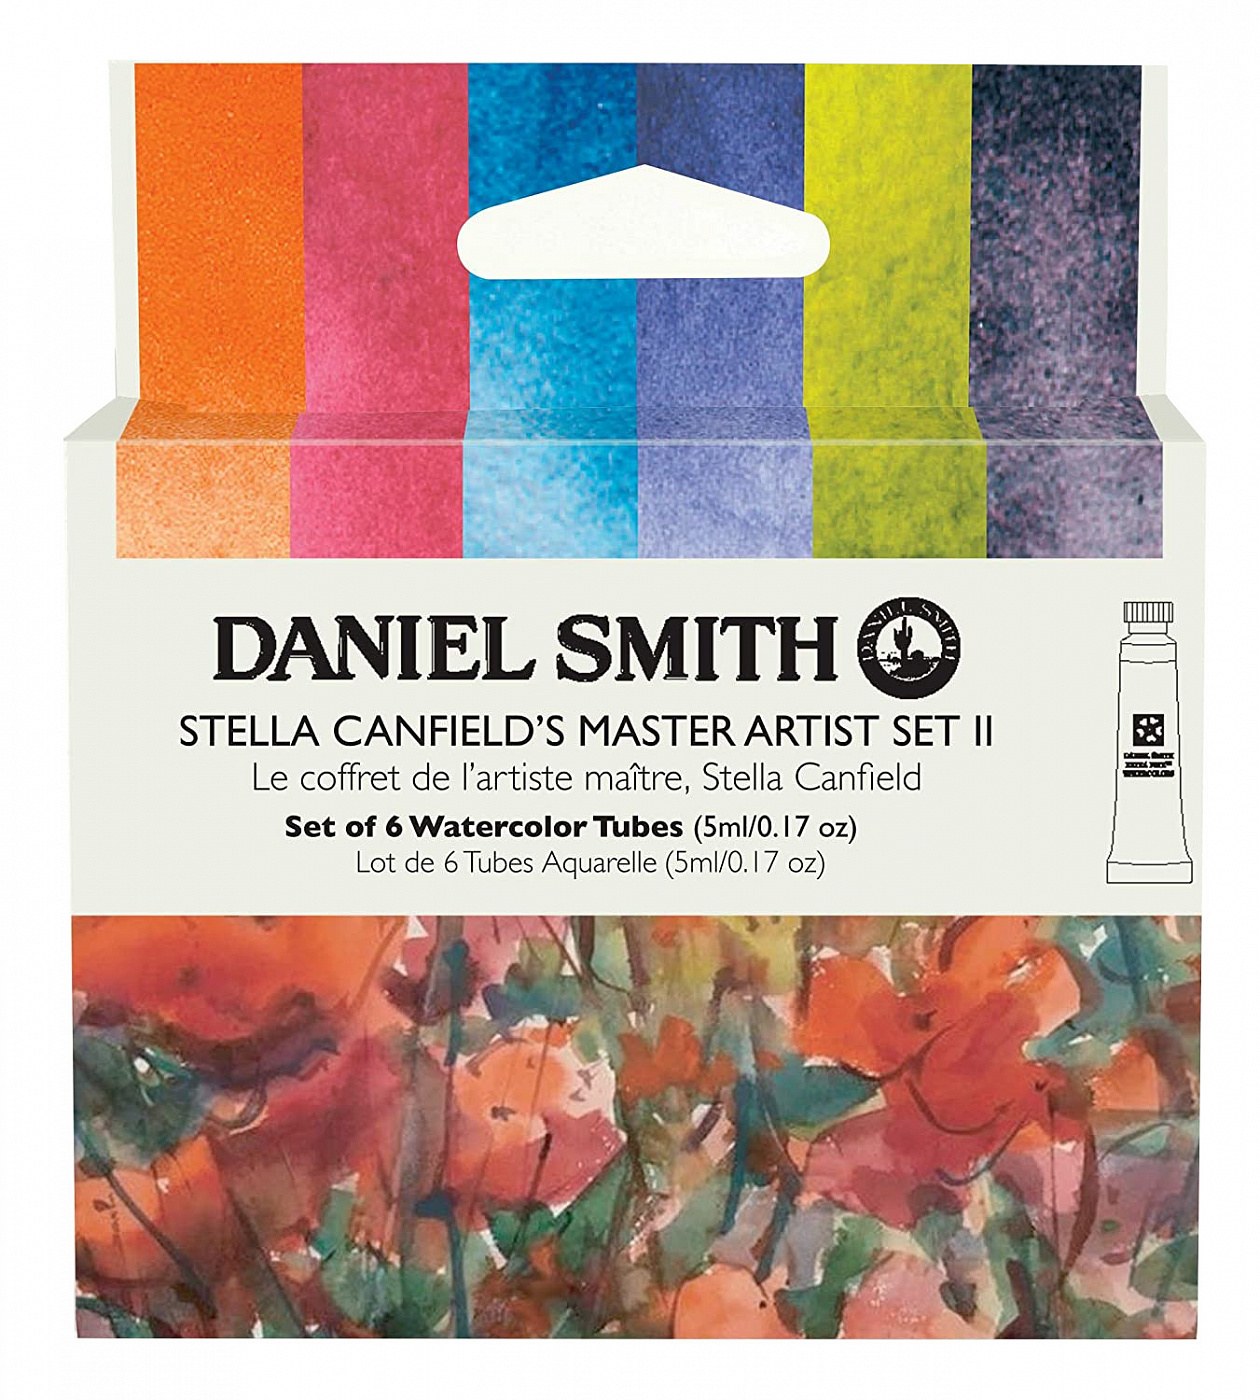 Набор акварели Daniel Smith Stella Canfield's Master Artist Set II, в тубах 6 цв*5 мл альбом галерея искусства стран европы и америки на русском языке